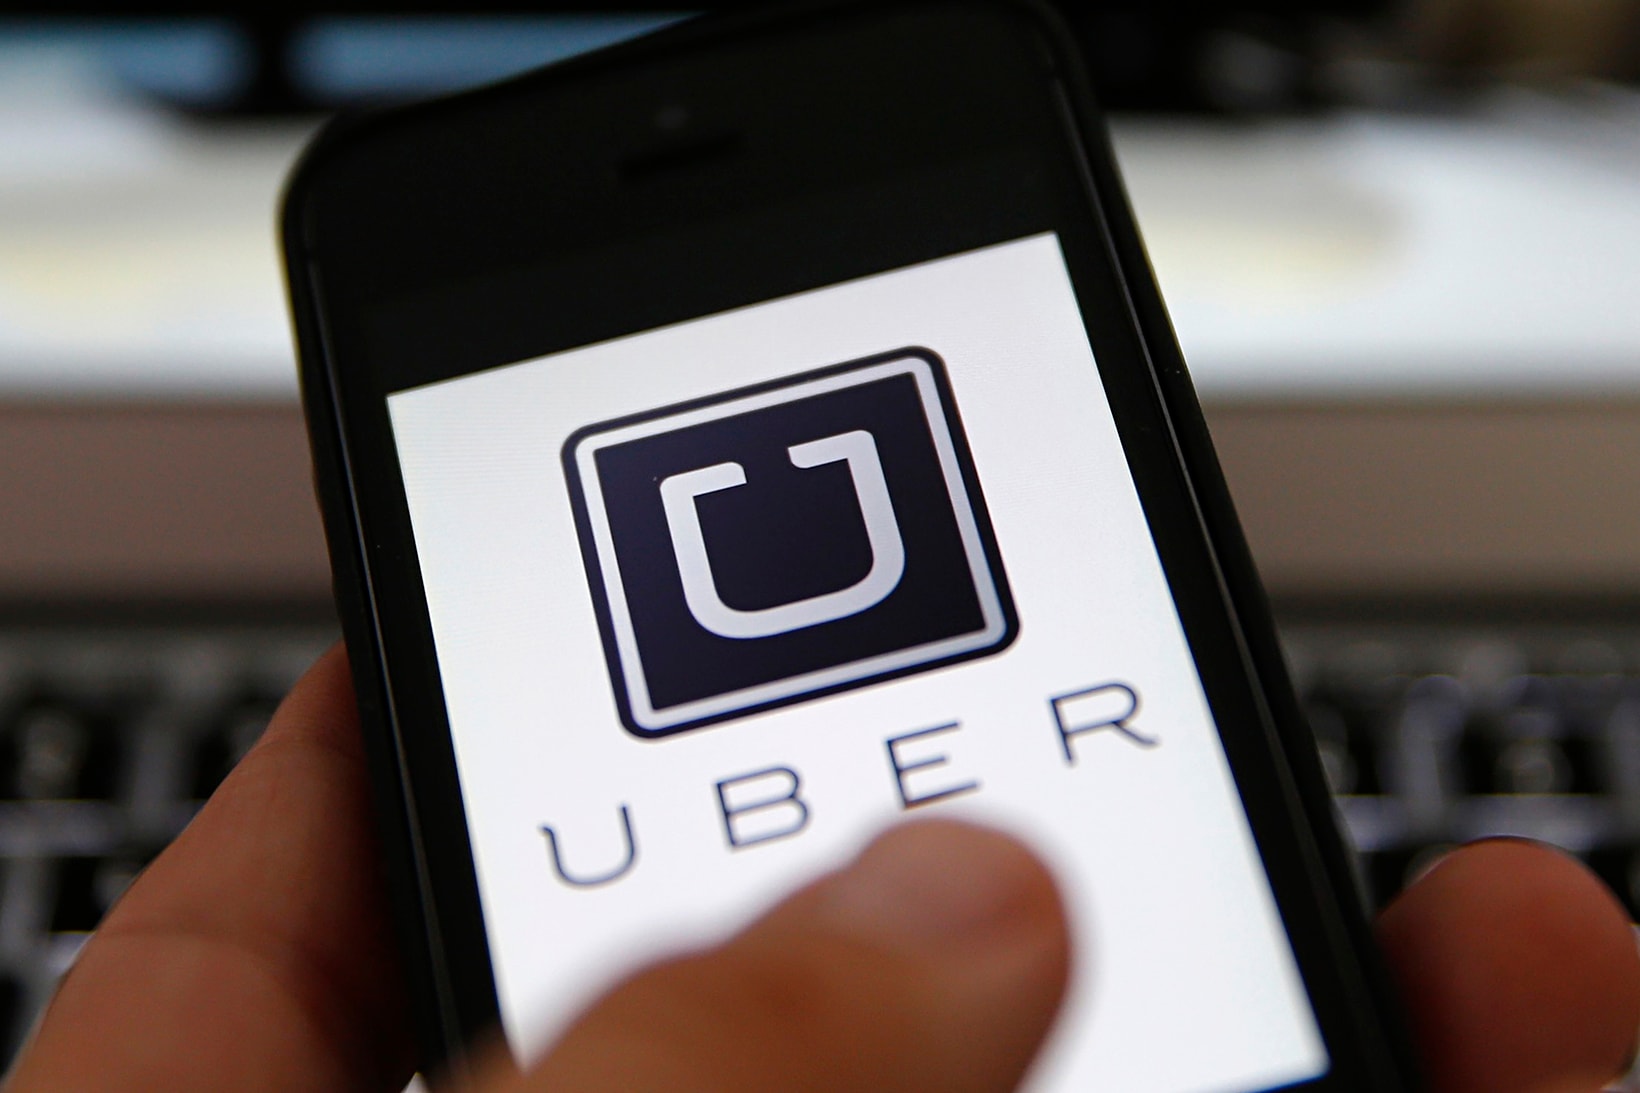 Uber Rent Car Rentals San Francisco Getaround partnership collaboration Jump Masabi